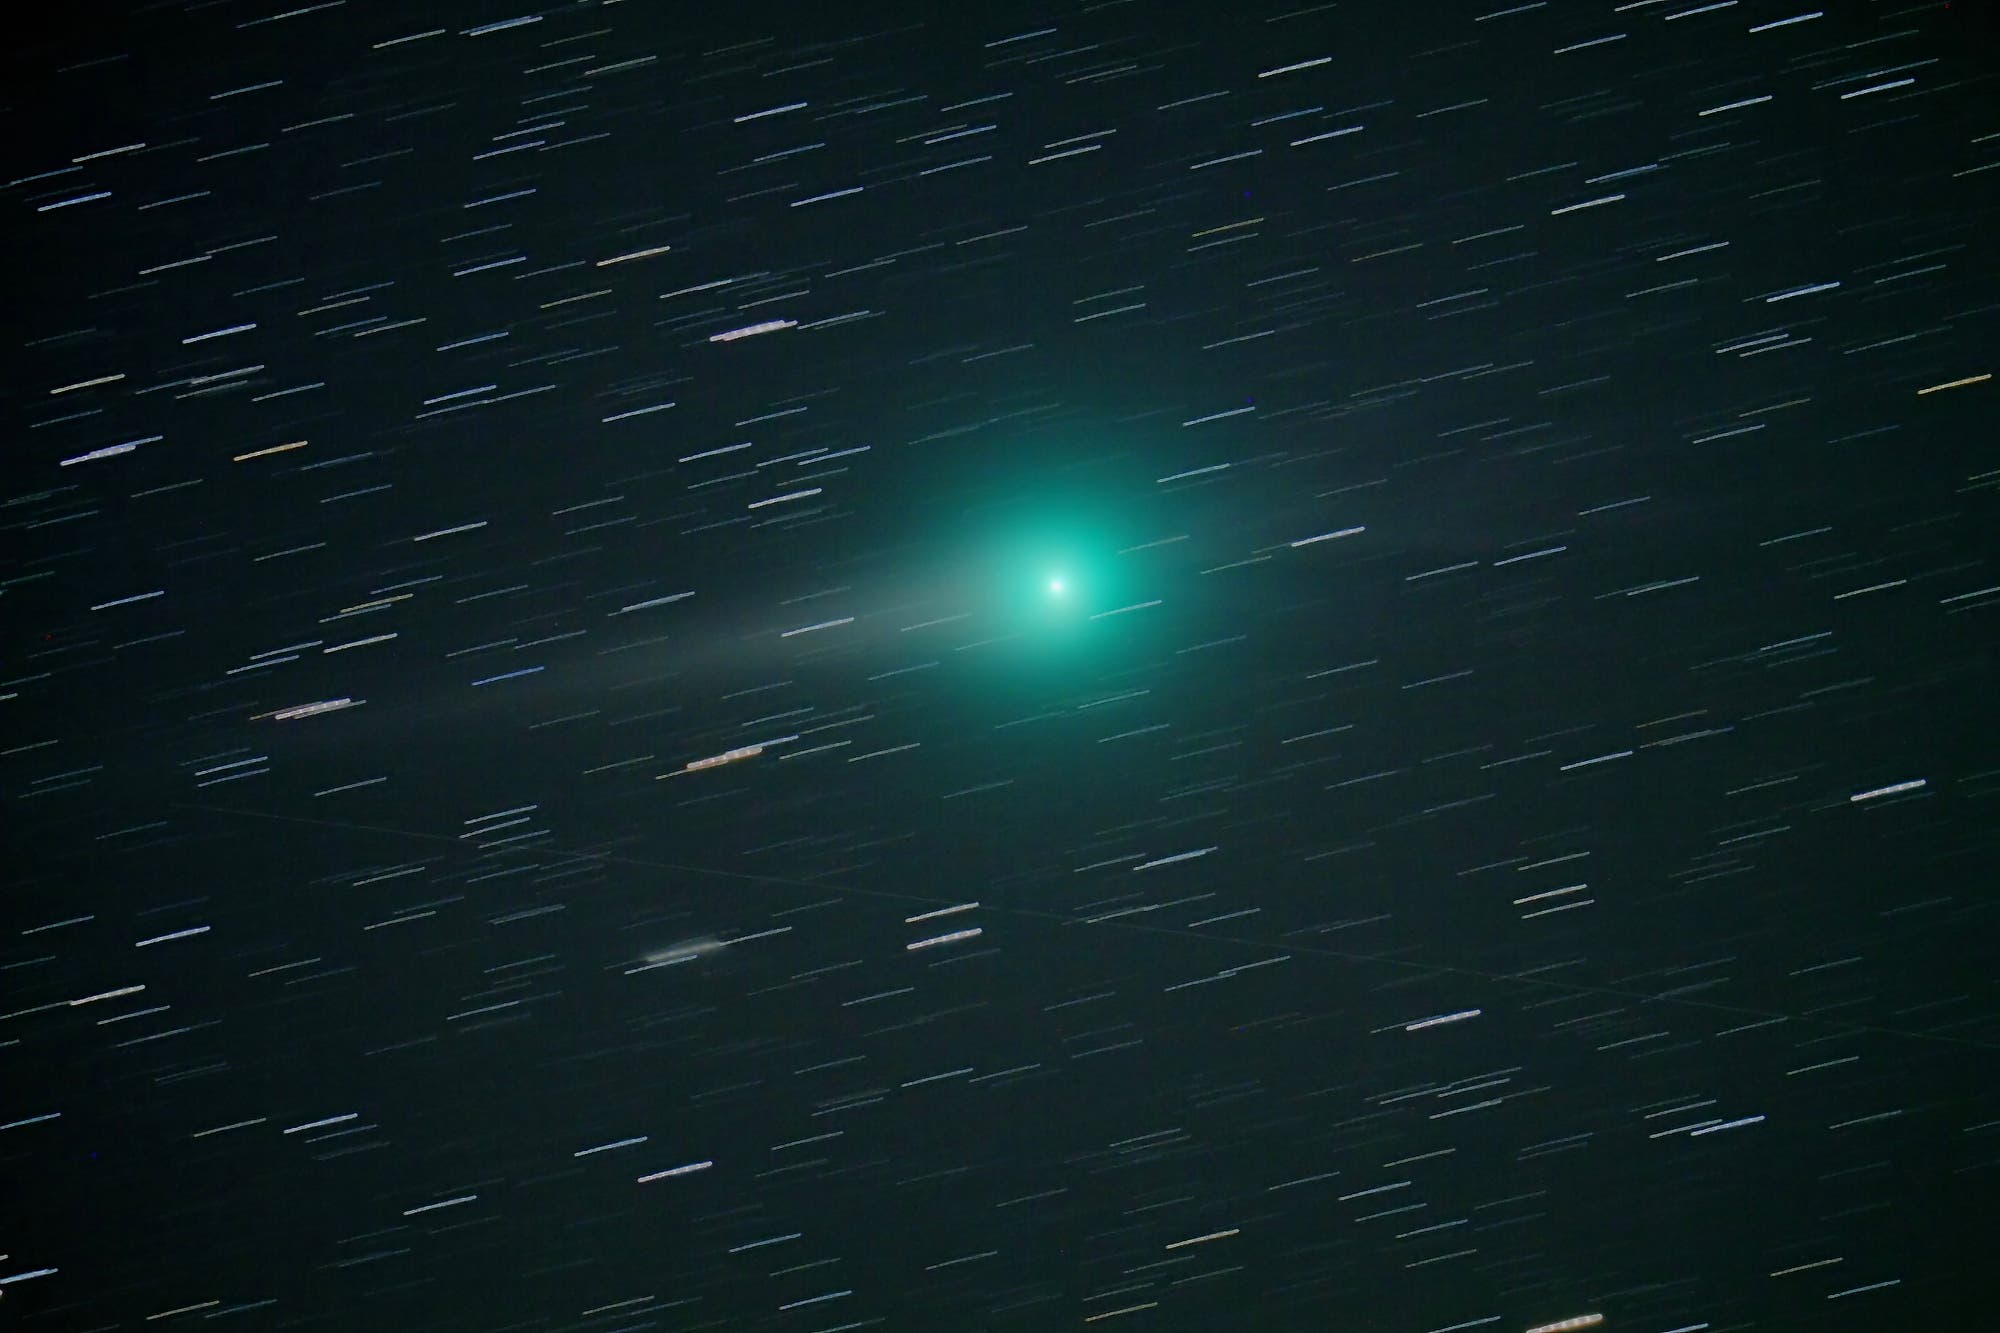 Komet C/2007 N3 am 20.2.2009